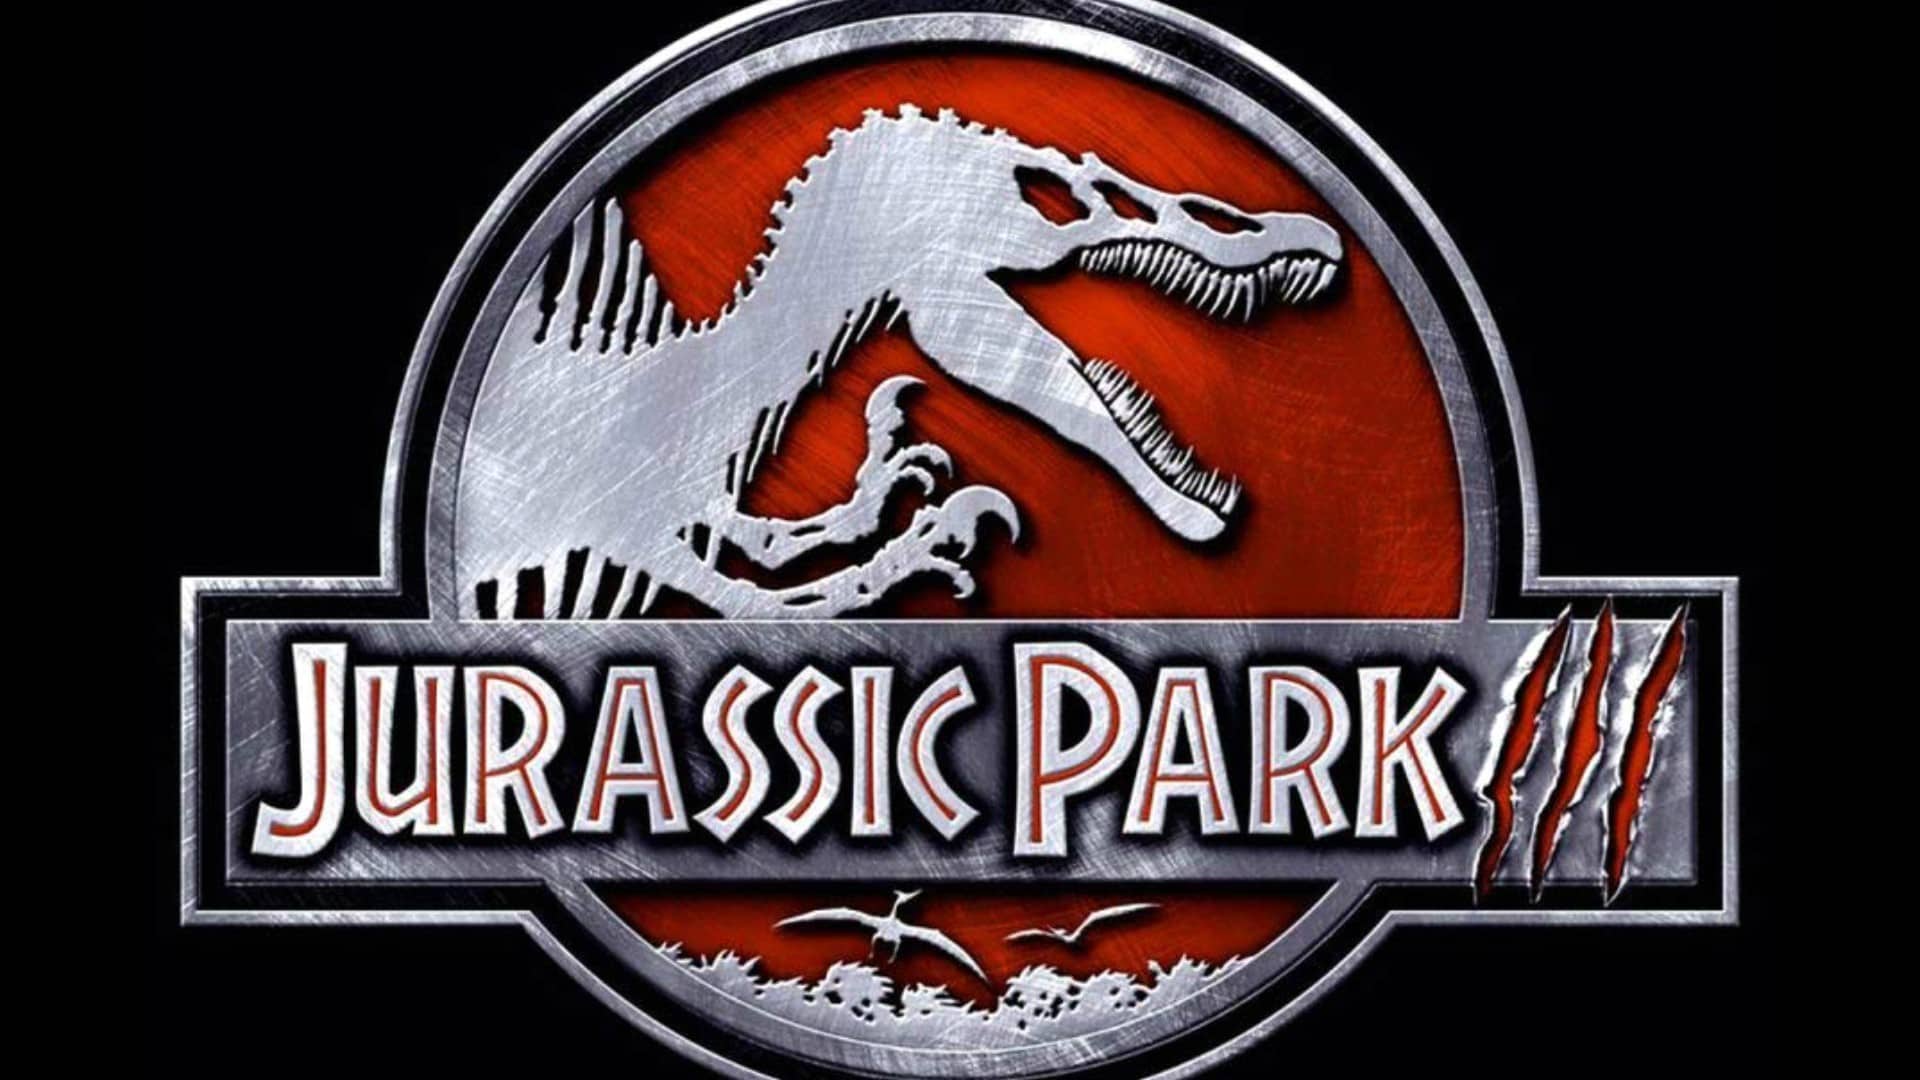 Il mondo perduto – Jurassic Park: le 10 cose che forse non sai sul film